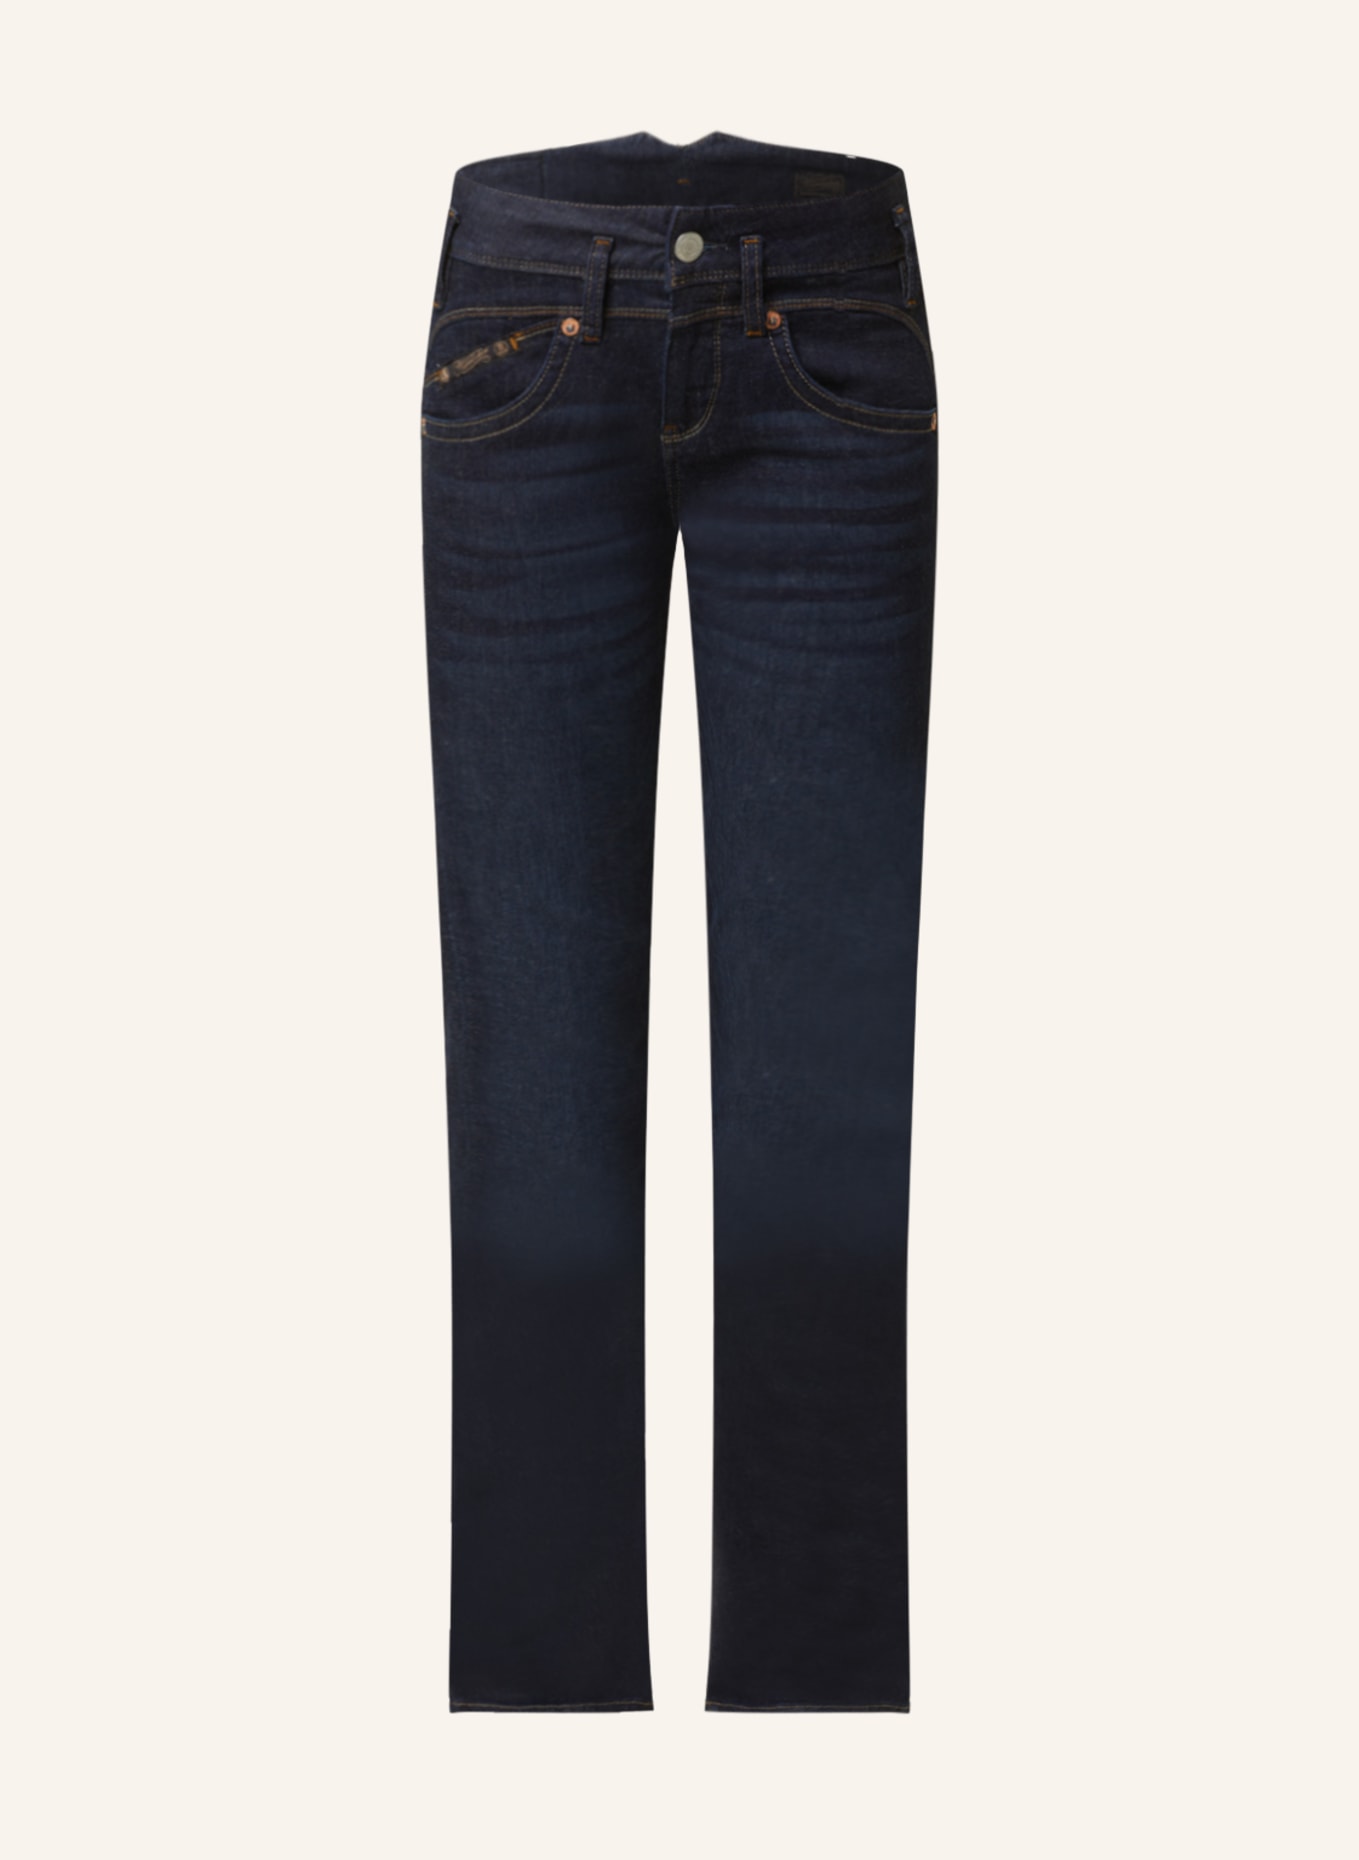 Herrlicher Flared Jeans PEARL, Farbe: 059 dark (Bild 1)